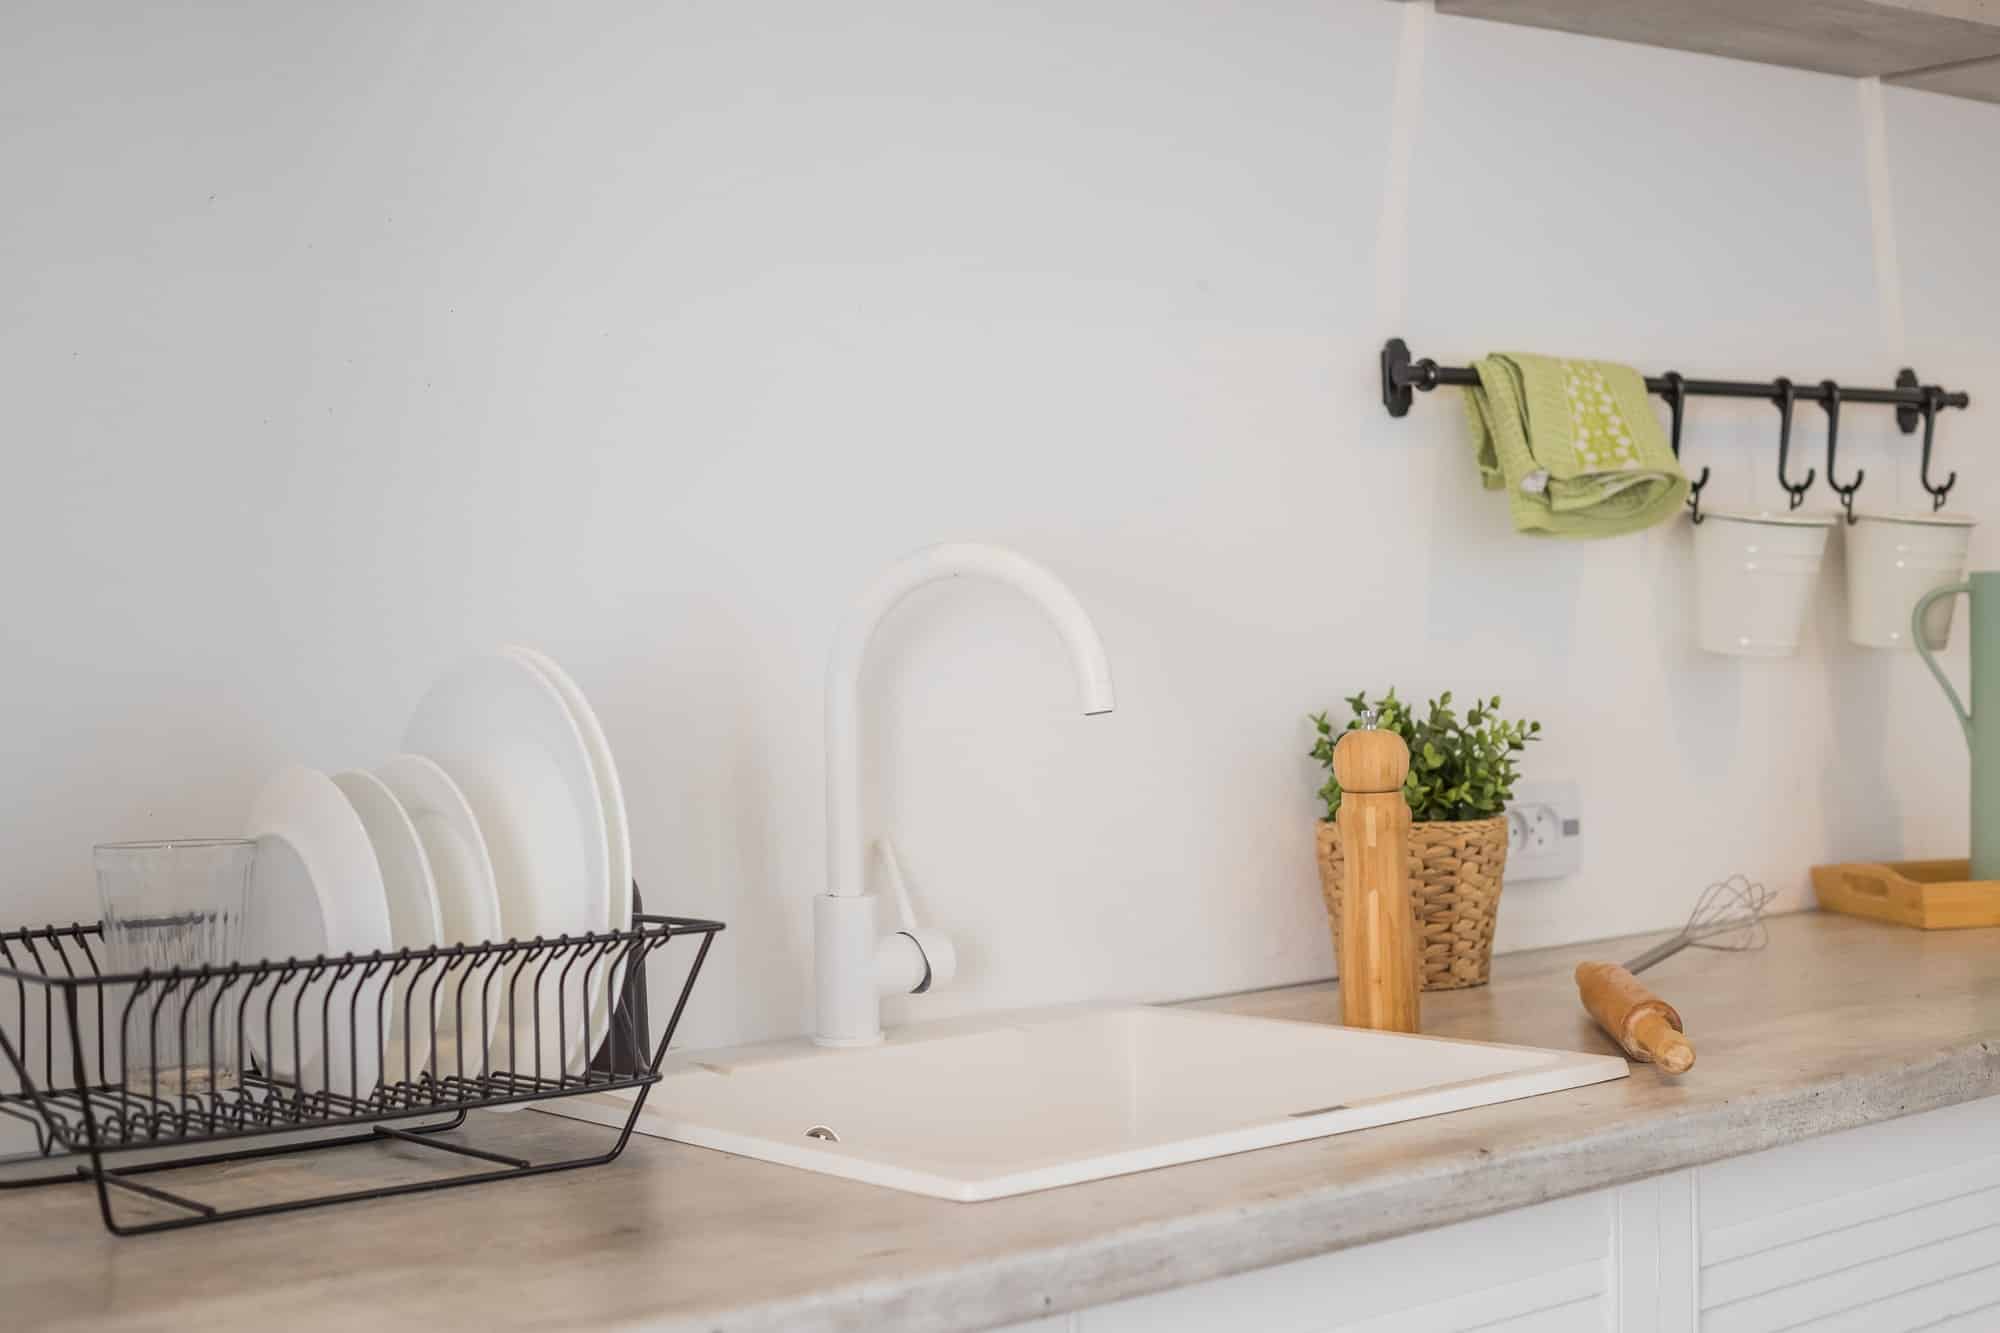 Comment assainir efficacement votre égouttoir à vaisselle ?